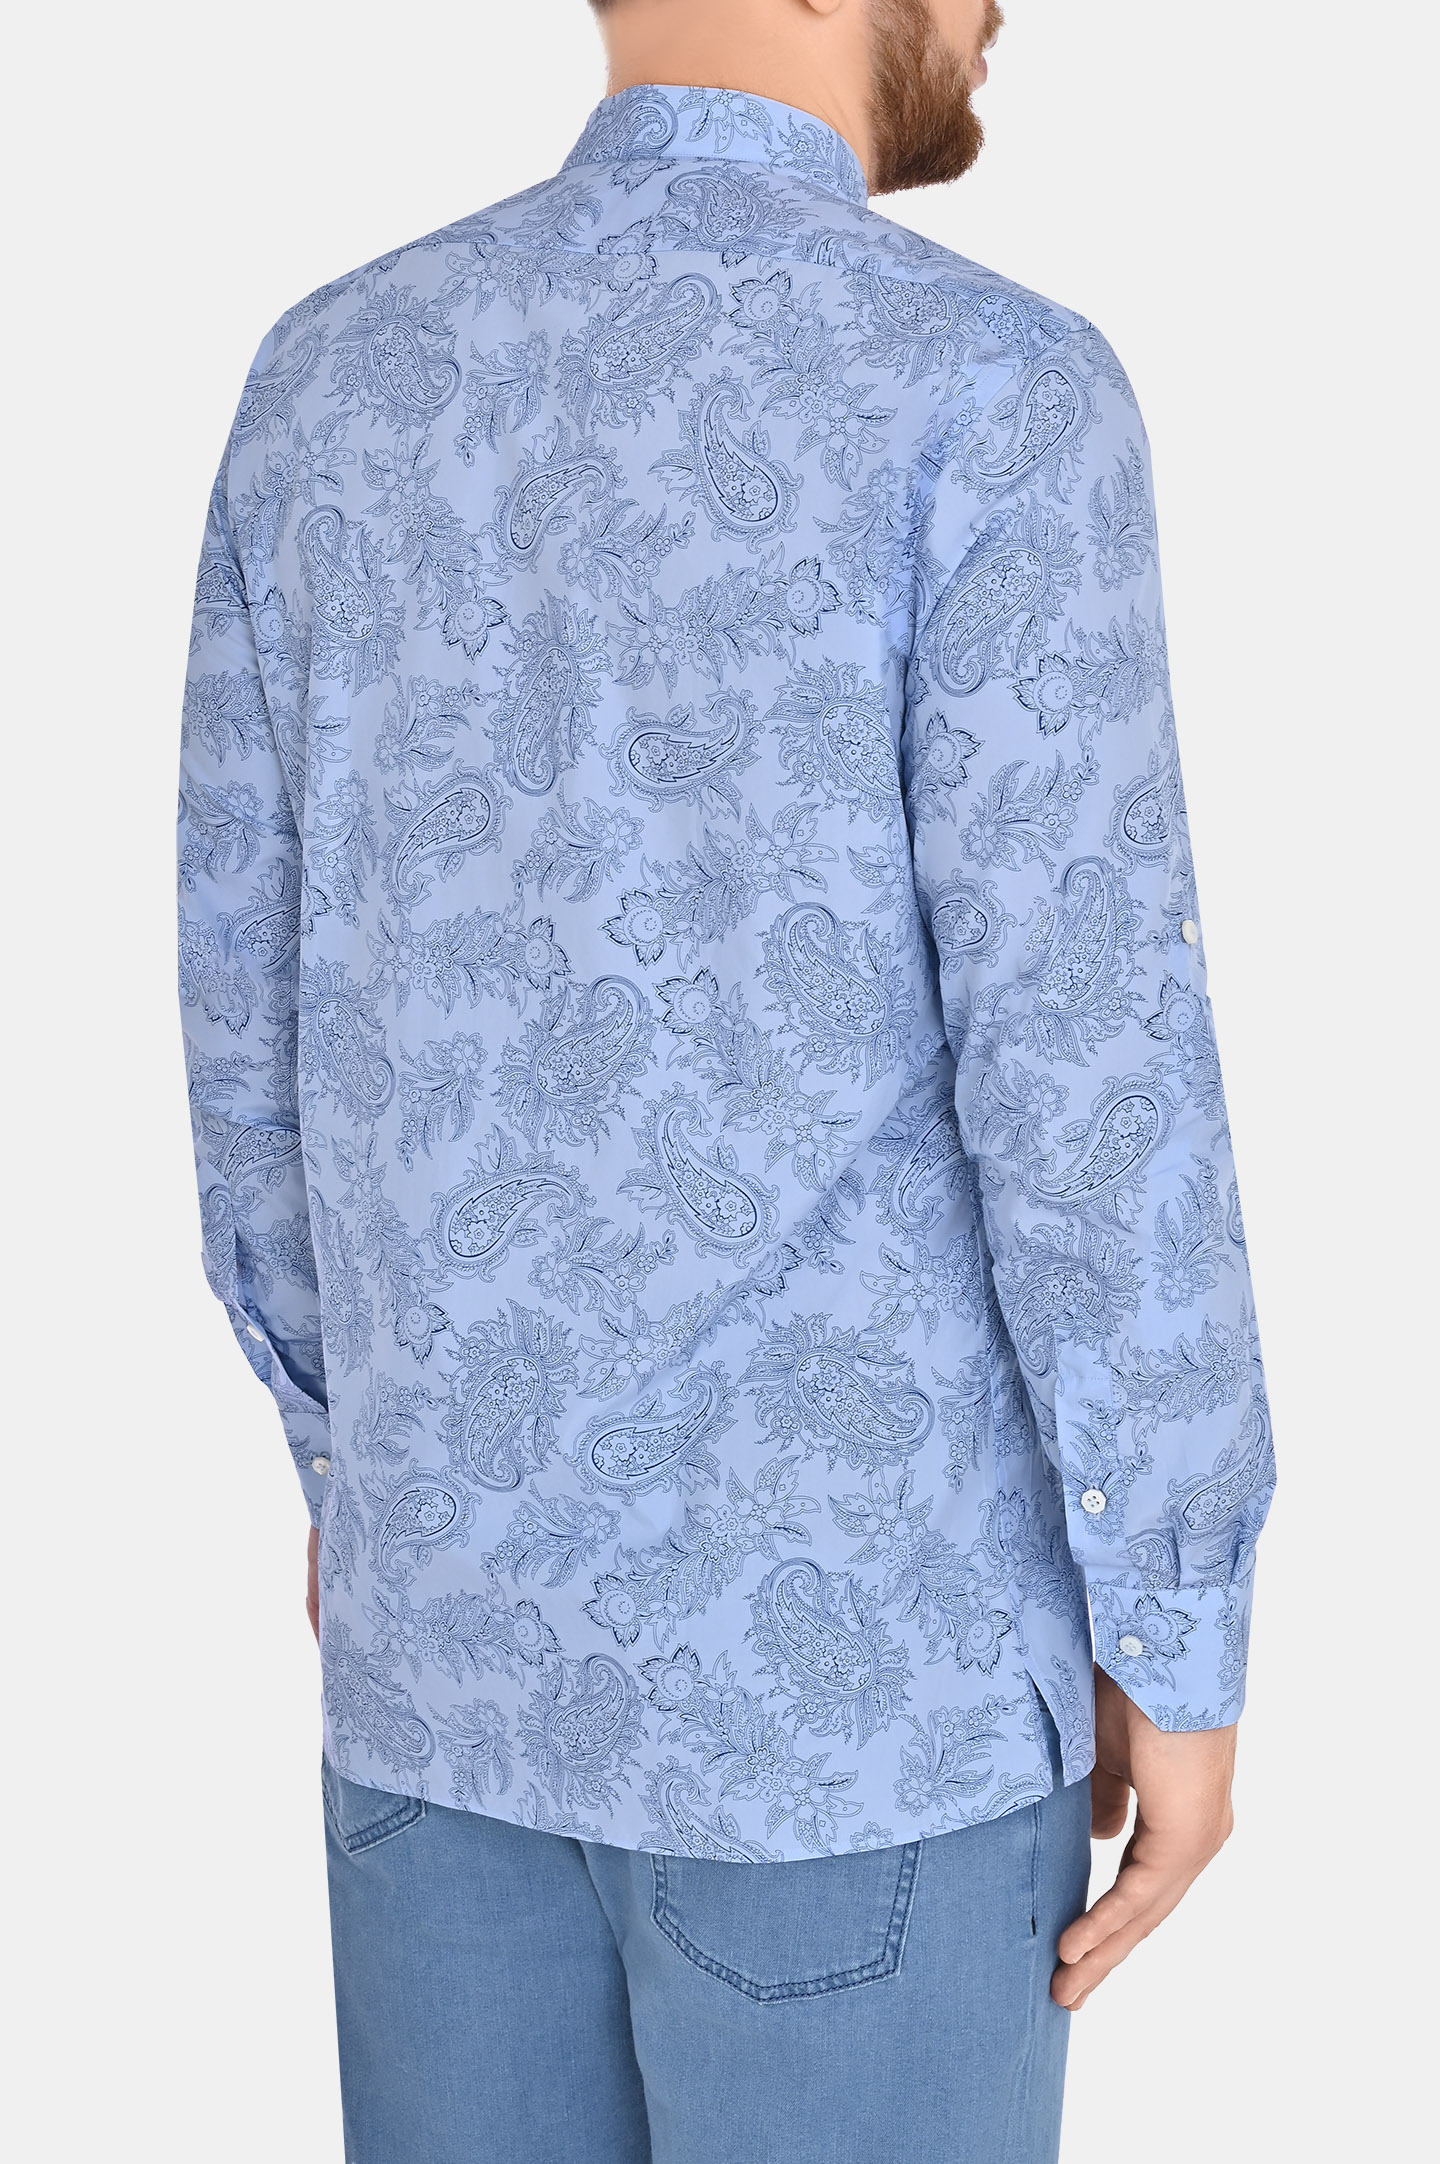 Рубашка CASTANGIA PITRGU, цвет: Голубой, Мужской